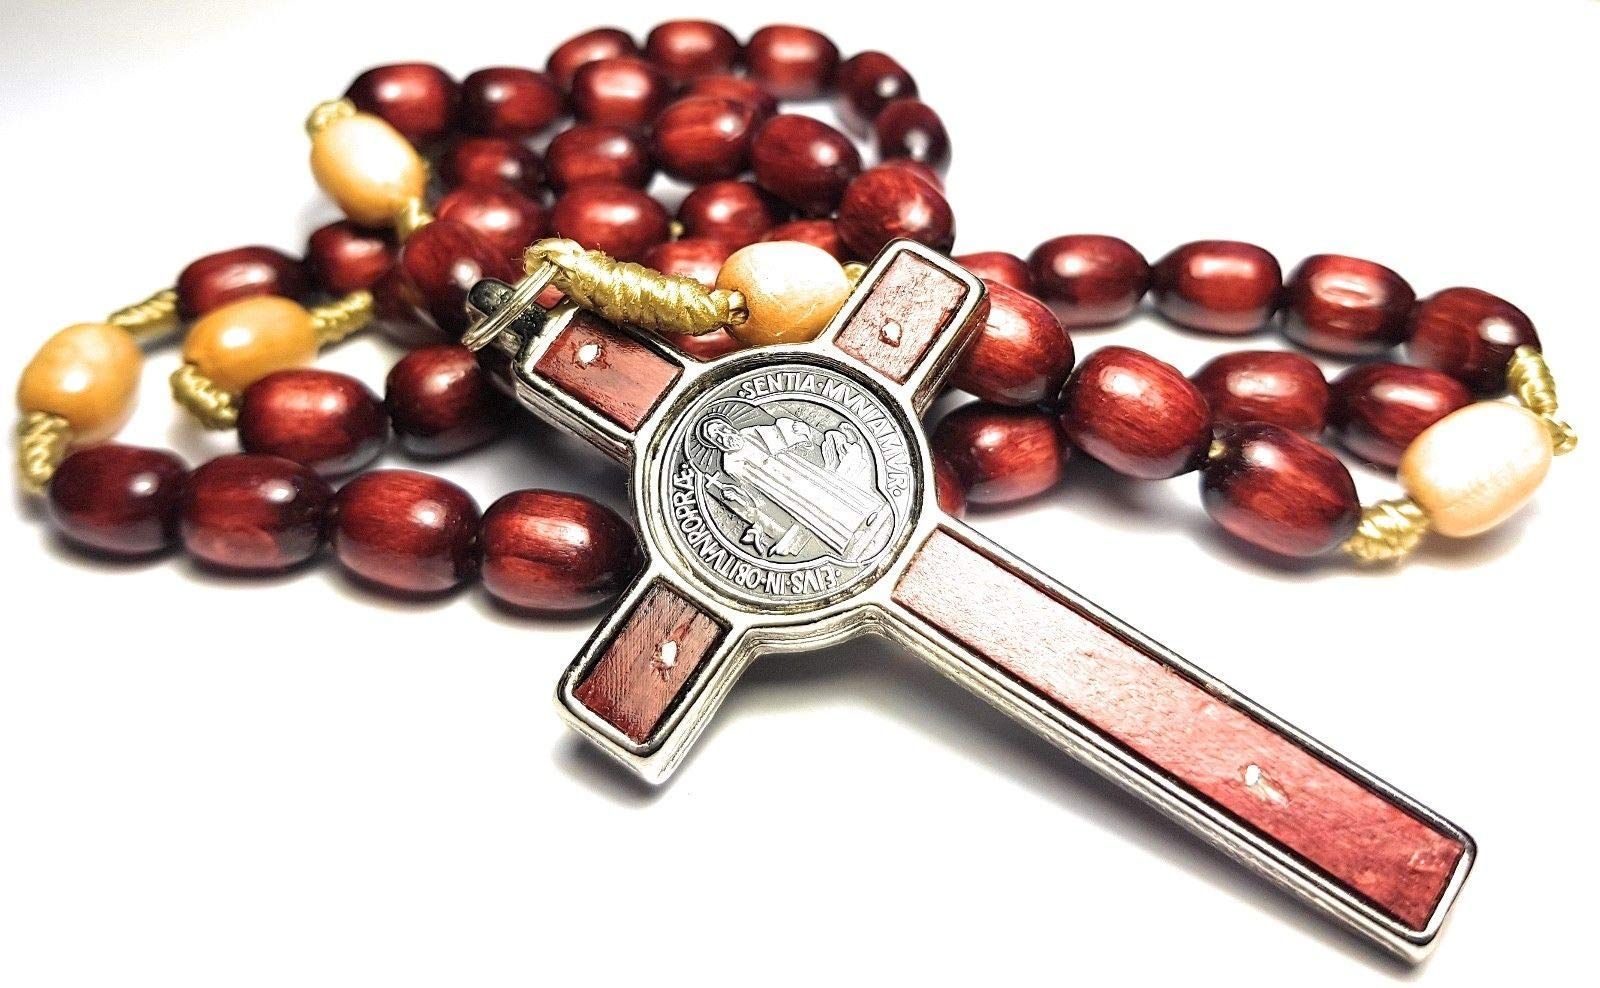 イタリア製 ロザリオ ローマ教皇フランシス バチカン ローマの聖父 メダル 十字